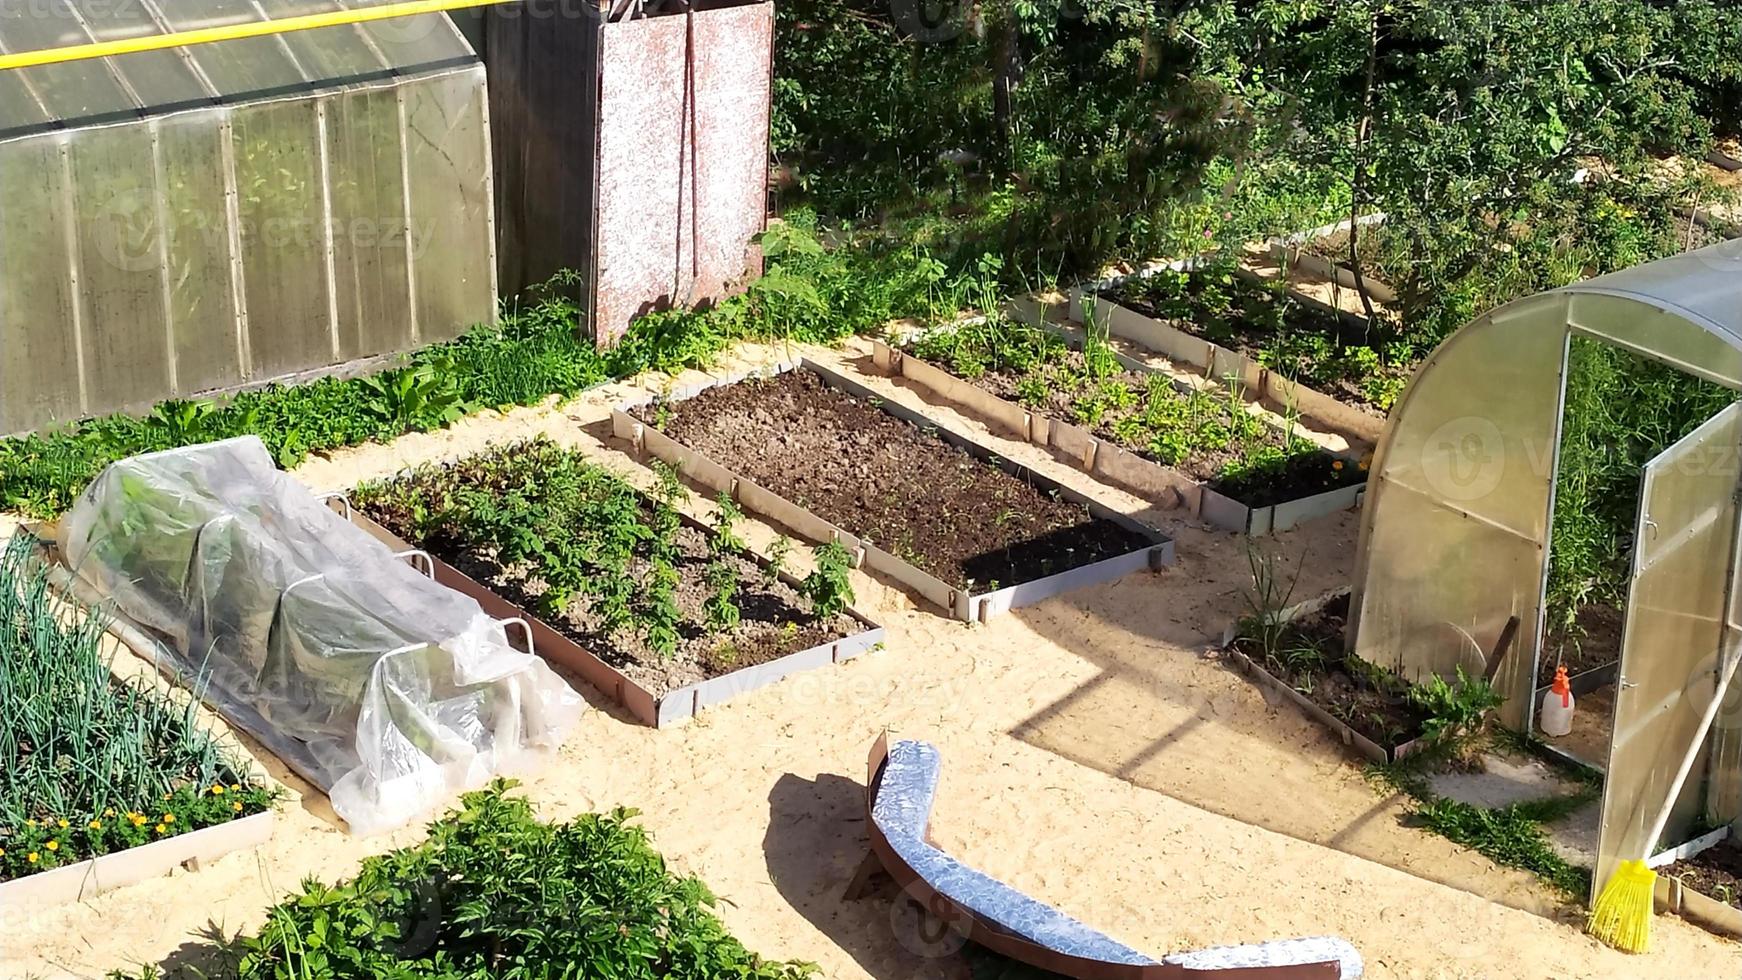 jardins com vegetais em sua casa de verão. plantações de vegetais foto